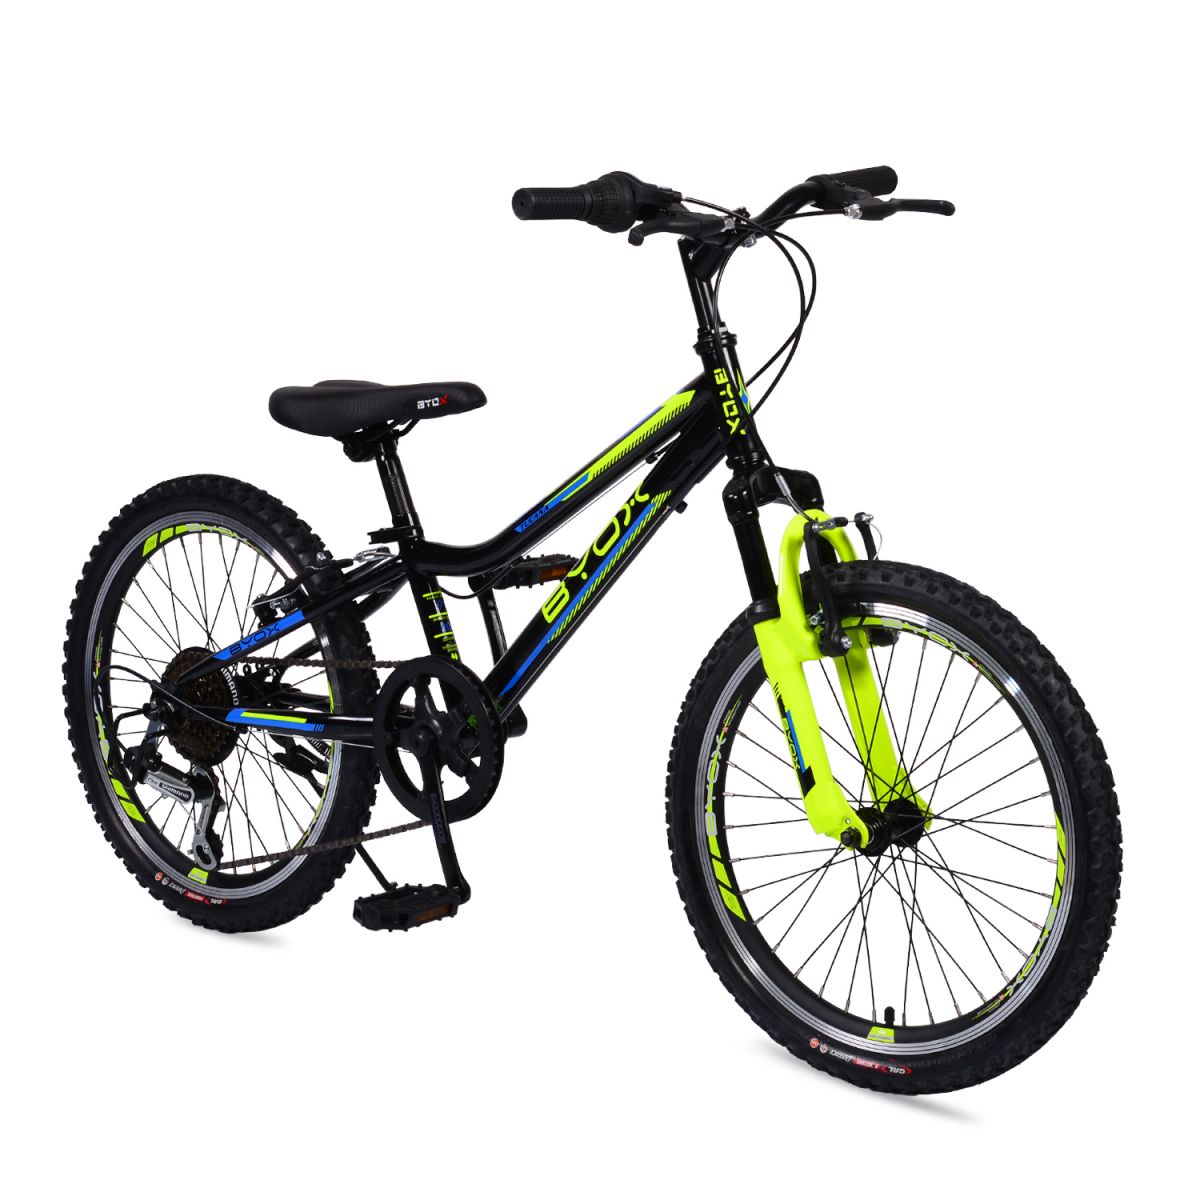 Купить подростковый велосипед для мальчика 10 лет. Велосипед Wind Tucana 24. Подростковый велосипед Flash. Электровелосипед подростковый. Хорошие велосипеды для подростков.